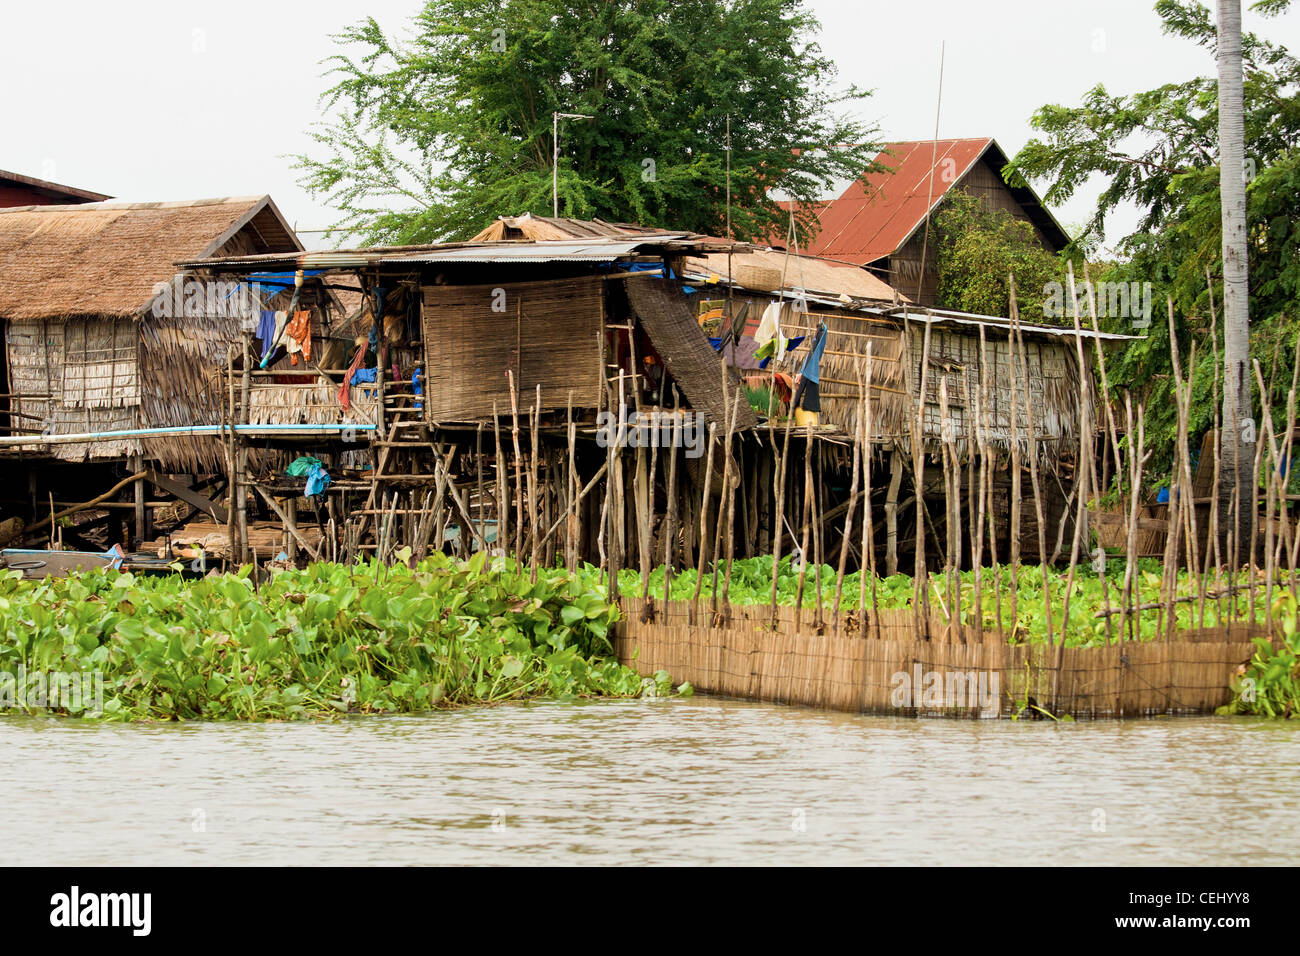 Les pêcheurs traditionnels des maisons sur pilotis en bois, lac Tonle Sap au Cambodge, Kompong Khleang village. Banque D'Images